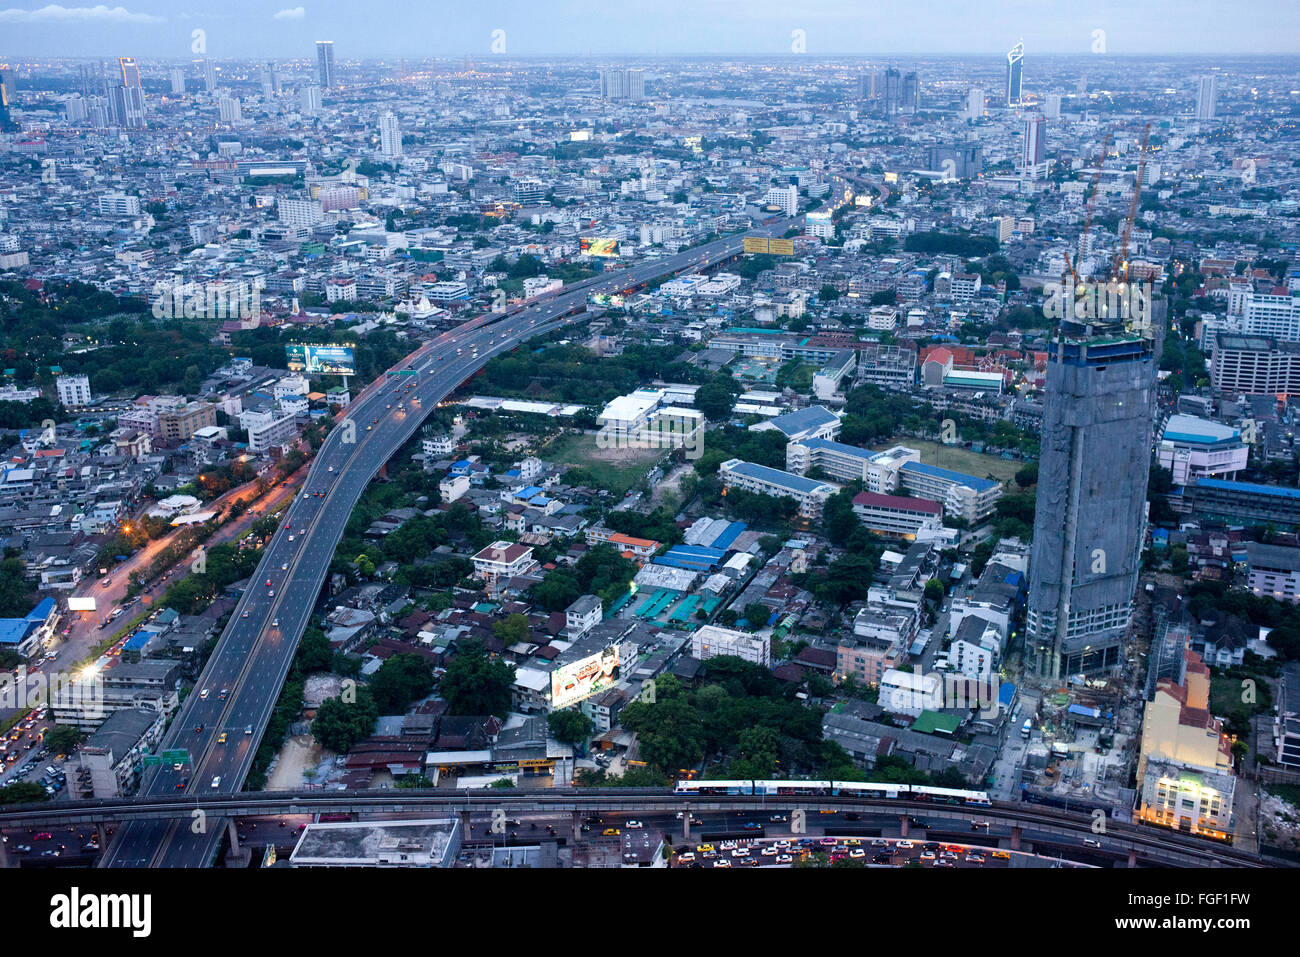 Panoramic views and landcape of Bangkok from Sirocco rooftop. Thailand. Asia, Bangkok, capital, Centara Grand, Chao Praya River, Stock Photo